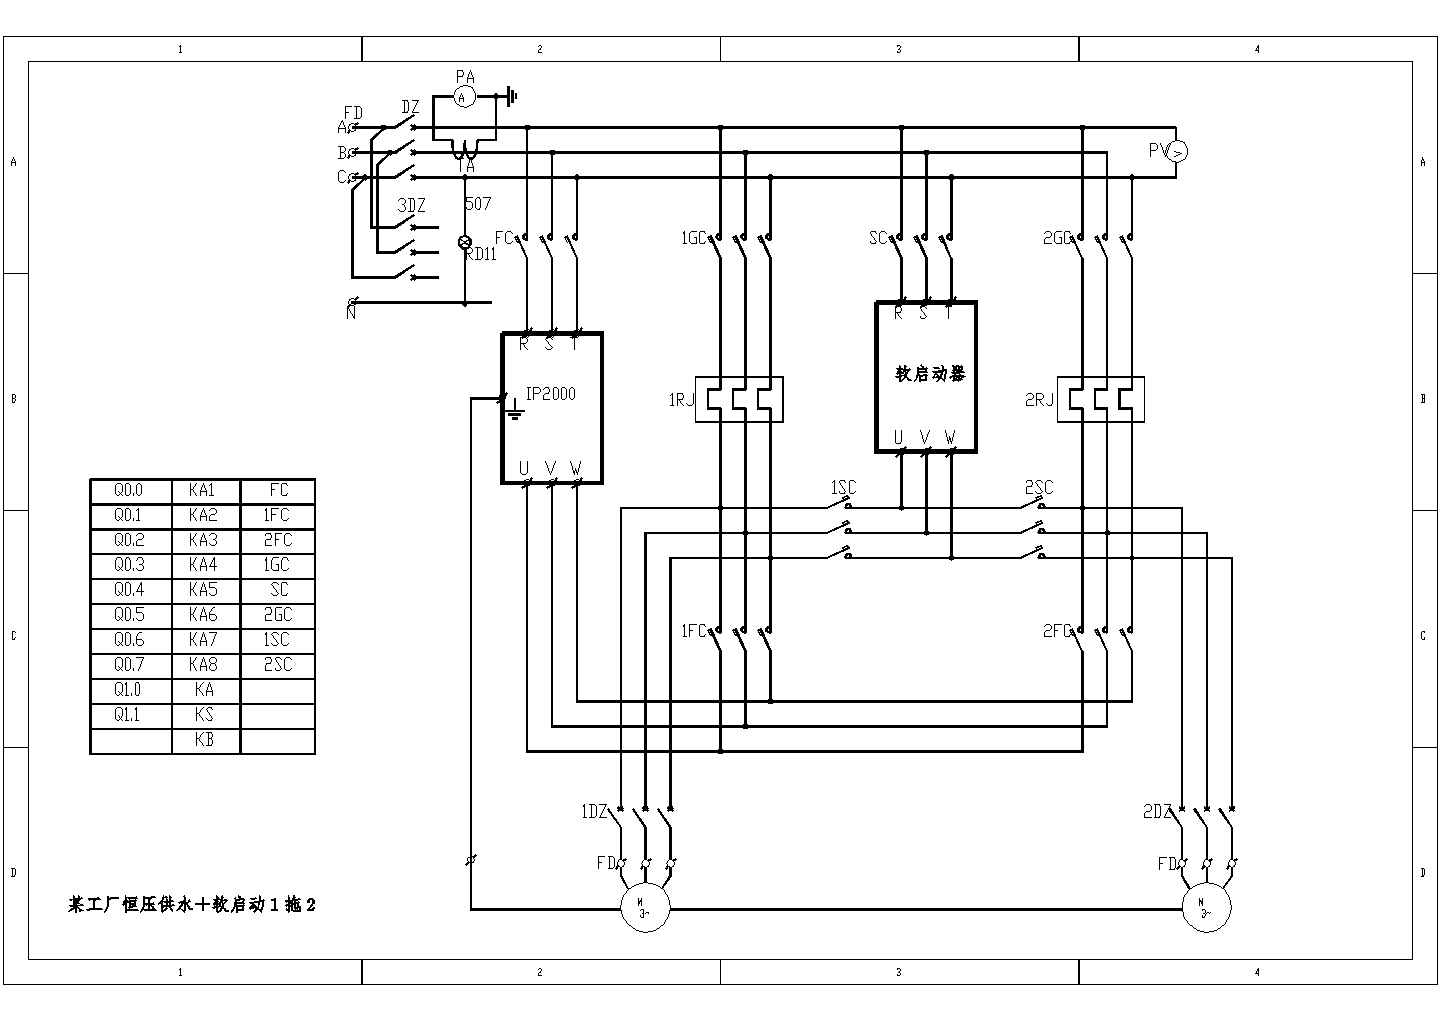 某机房工程电气设计图纸CAD原图